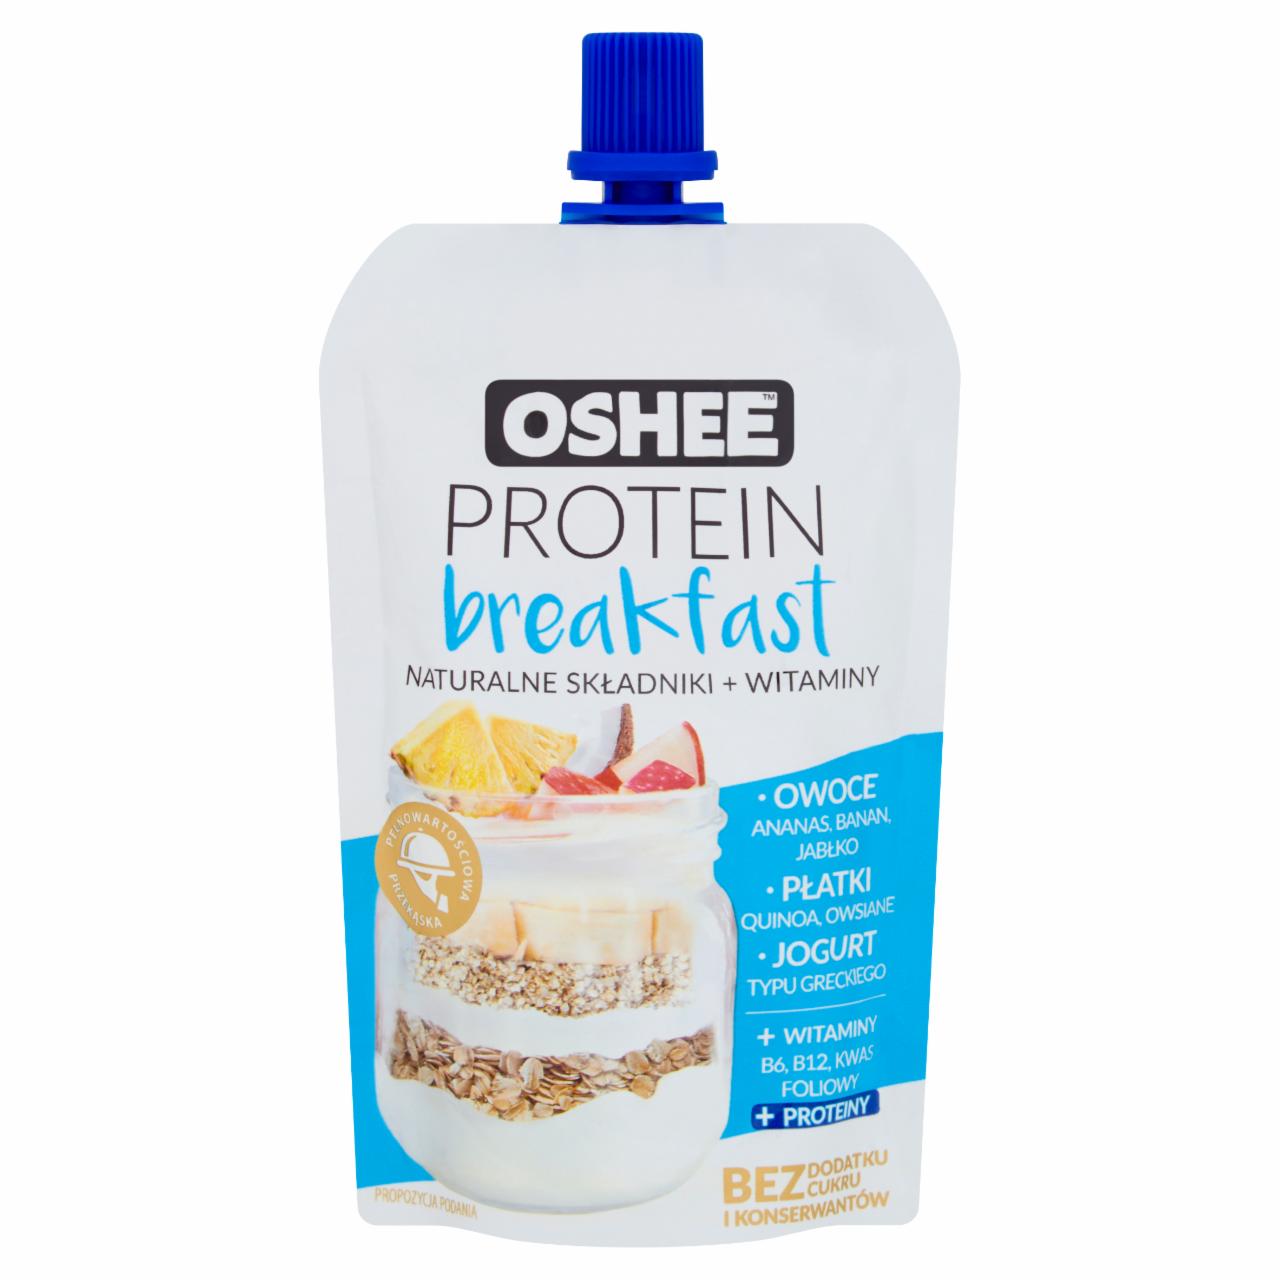 Zdjęcia - Oshee Protein Breakfast Mus 100 g